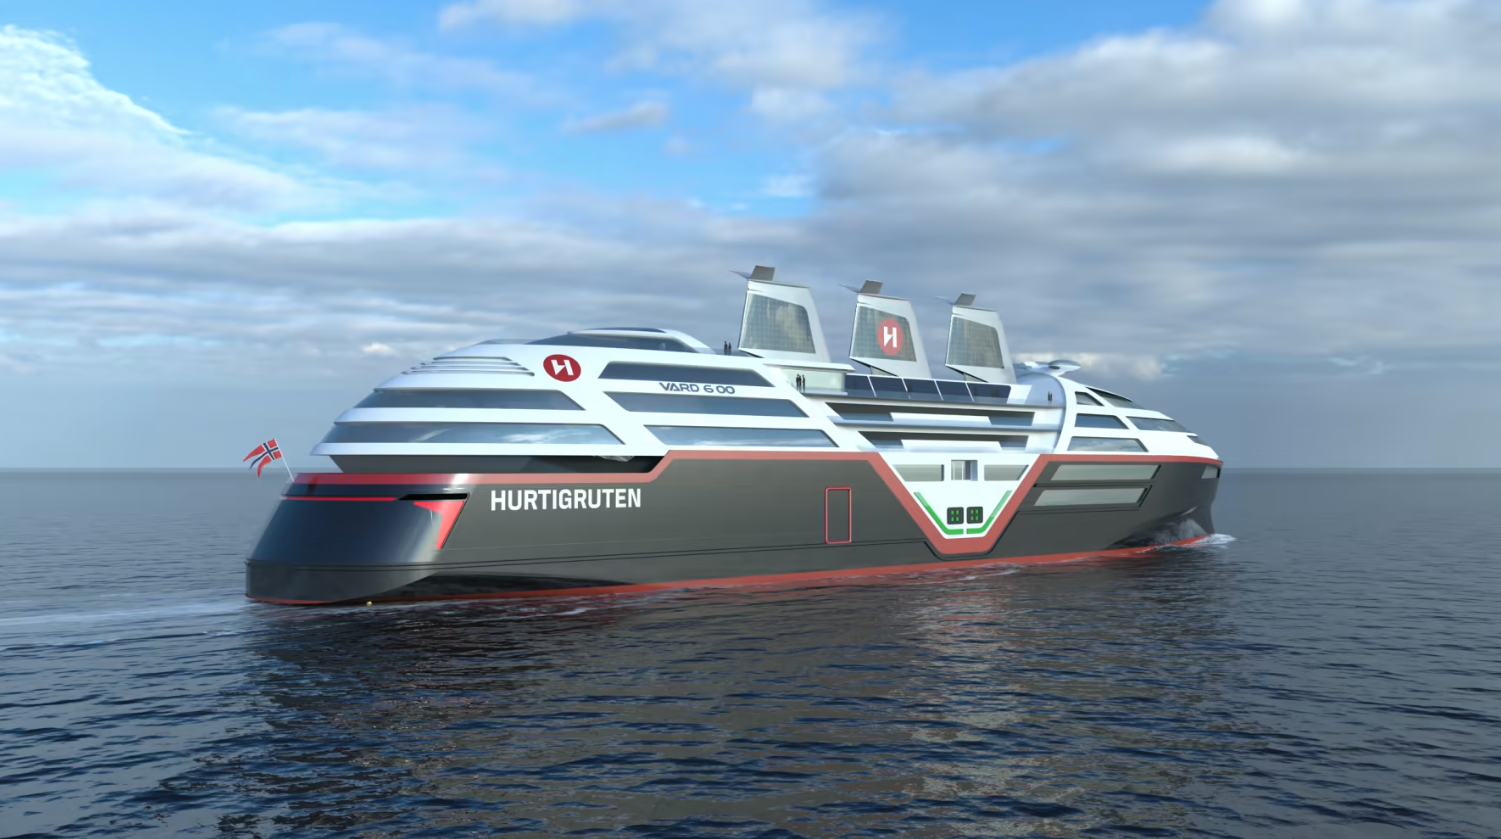 Visual concept of Hurtigruten Norway's Sea Zero initiative